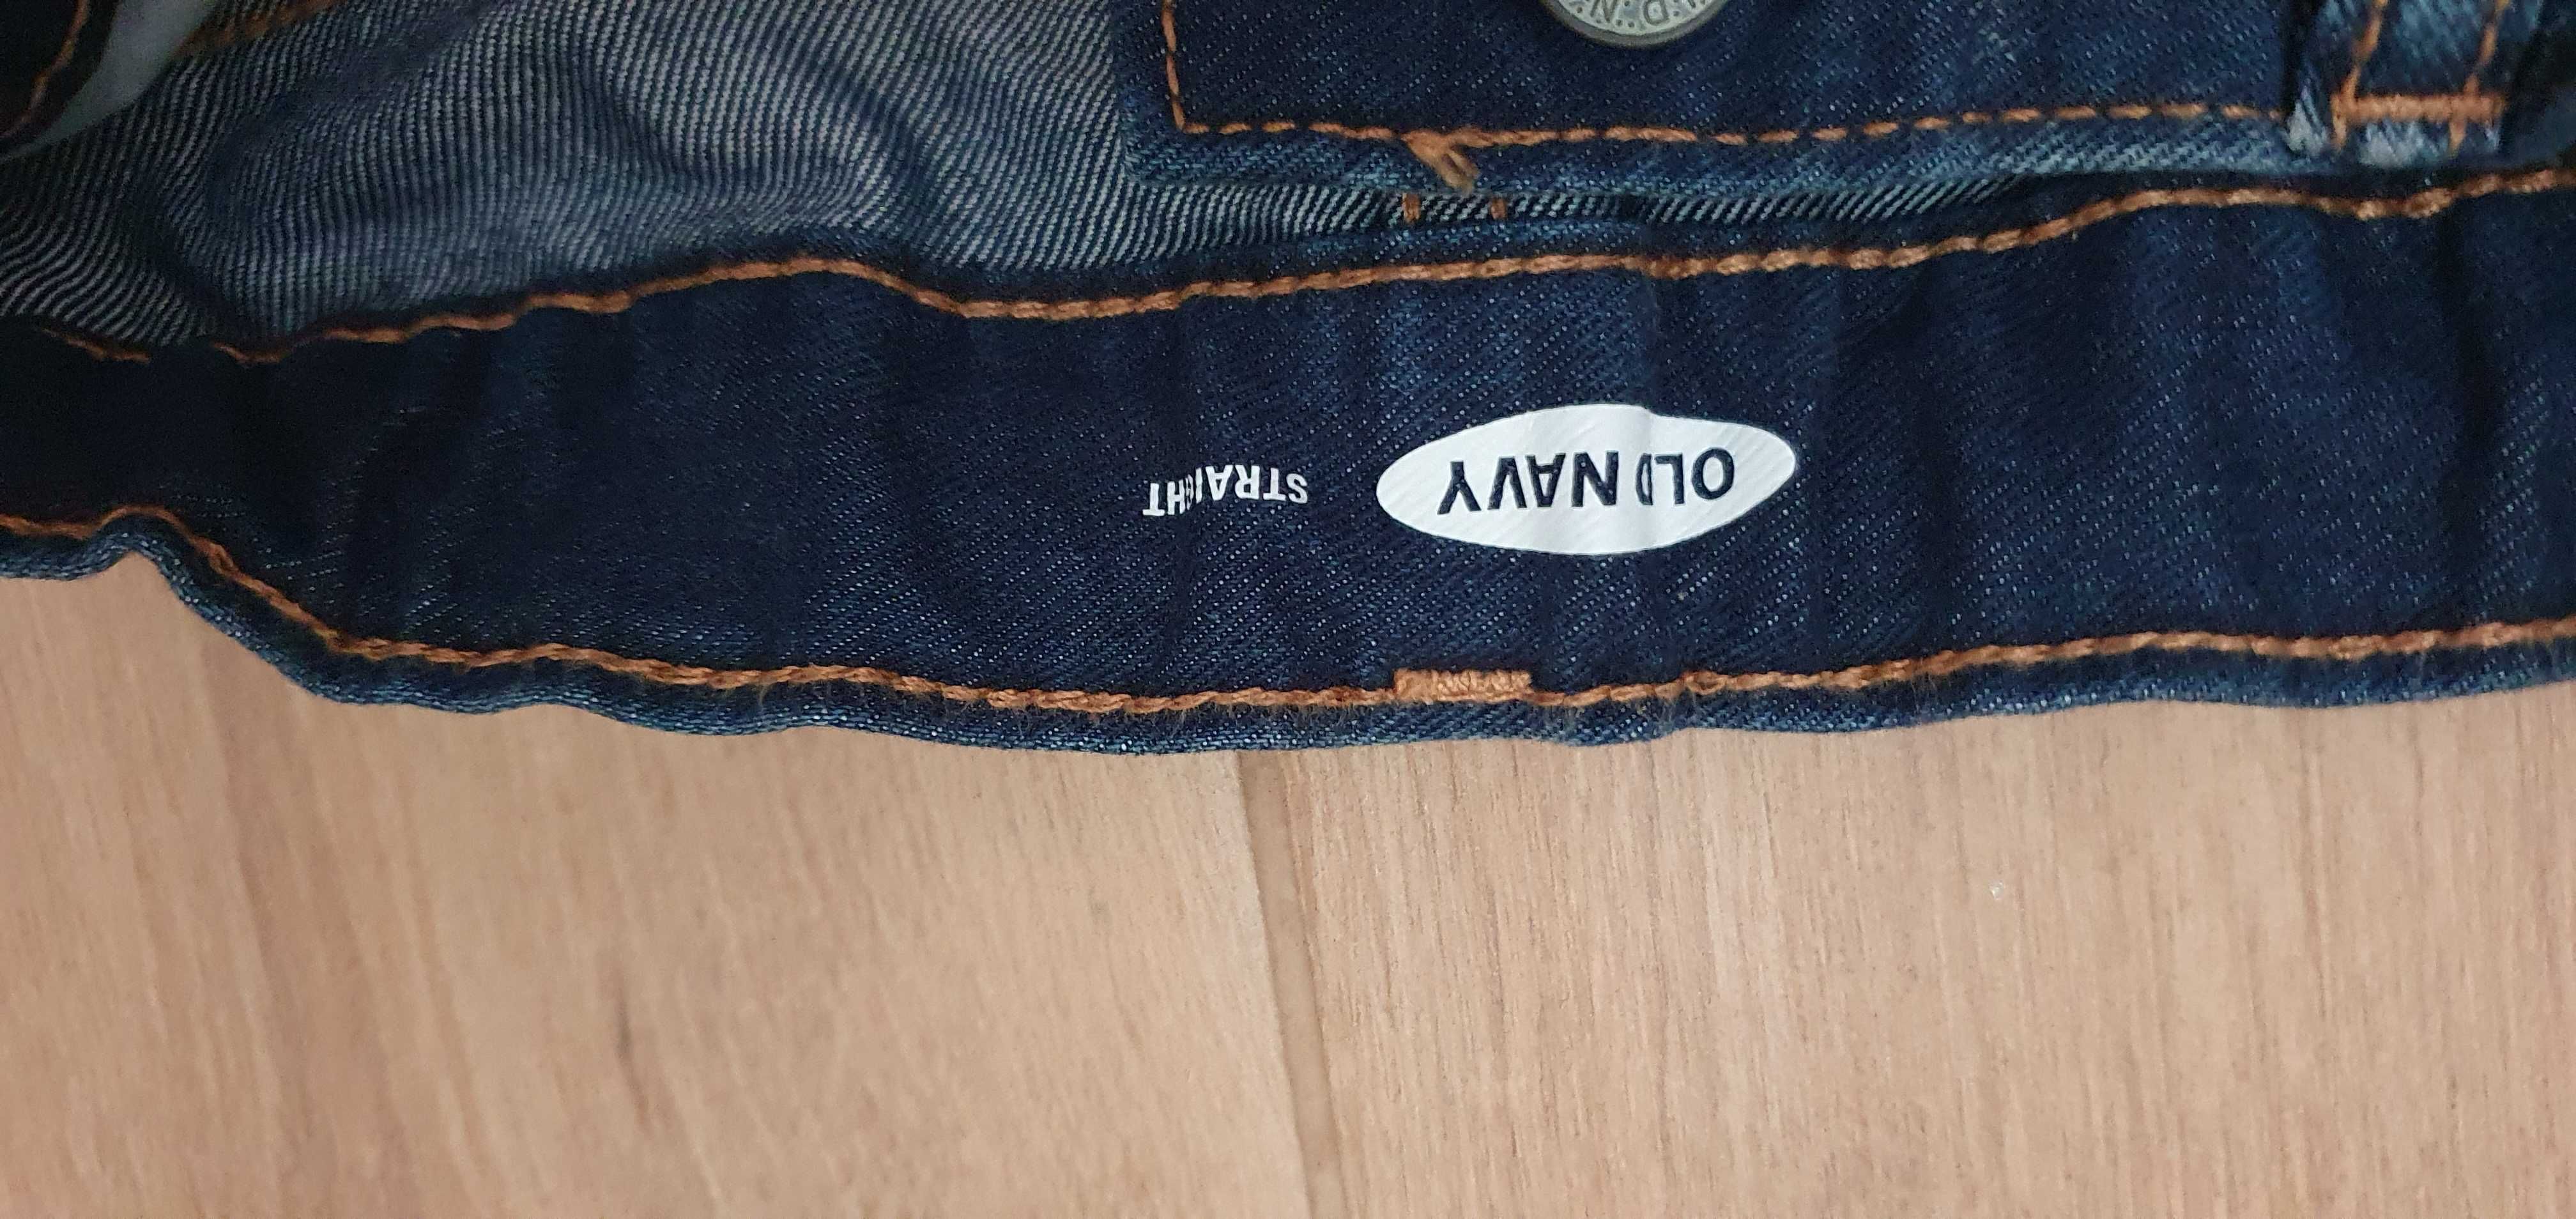 Джинси джинсы   134  140 см OLd navy  ОЛД неві нові олд неви